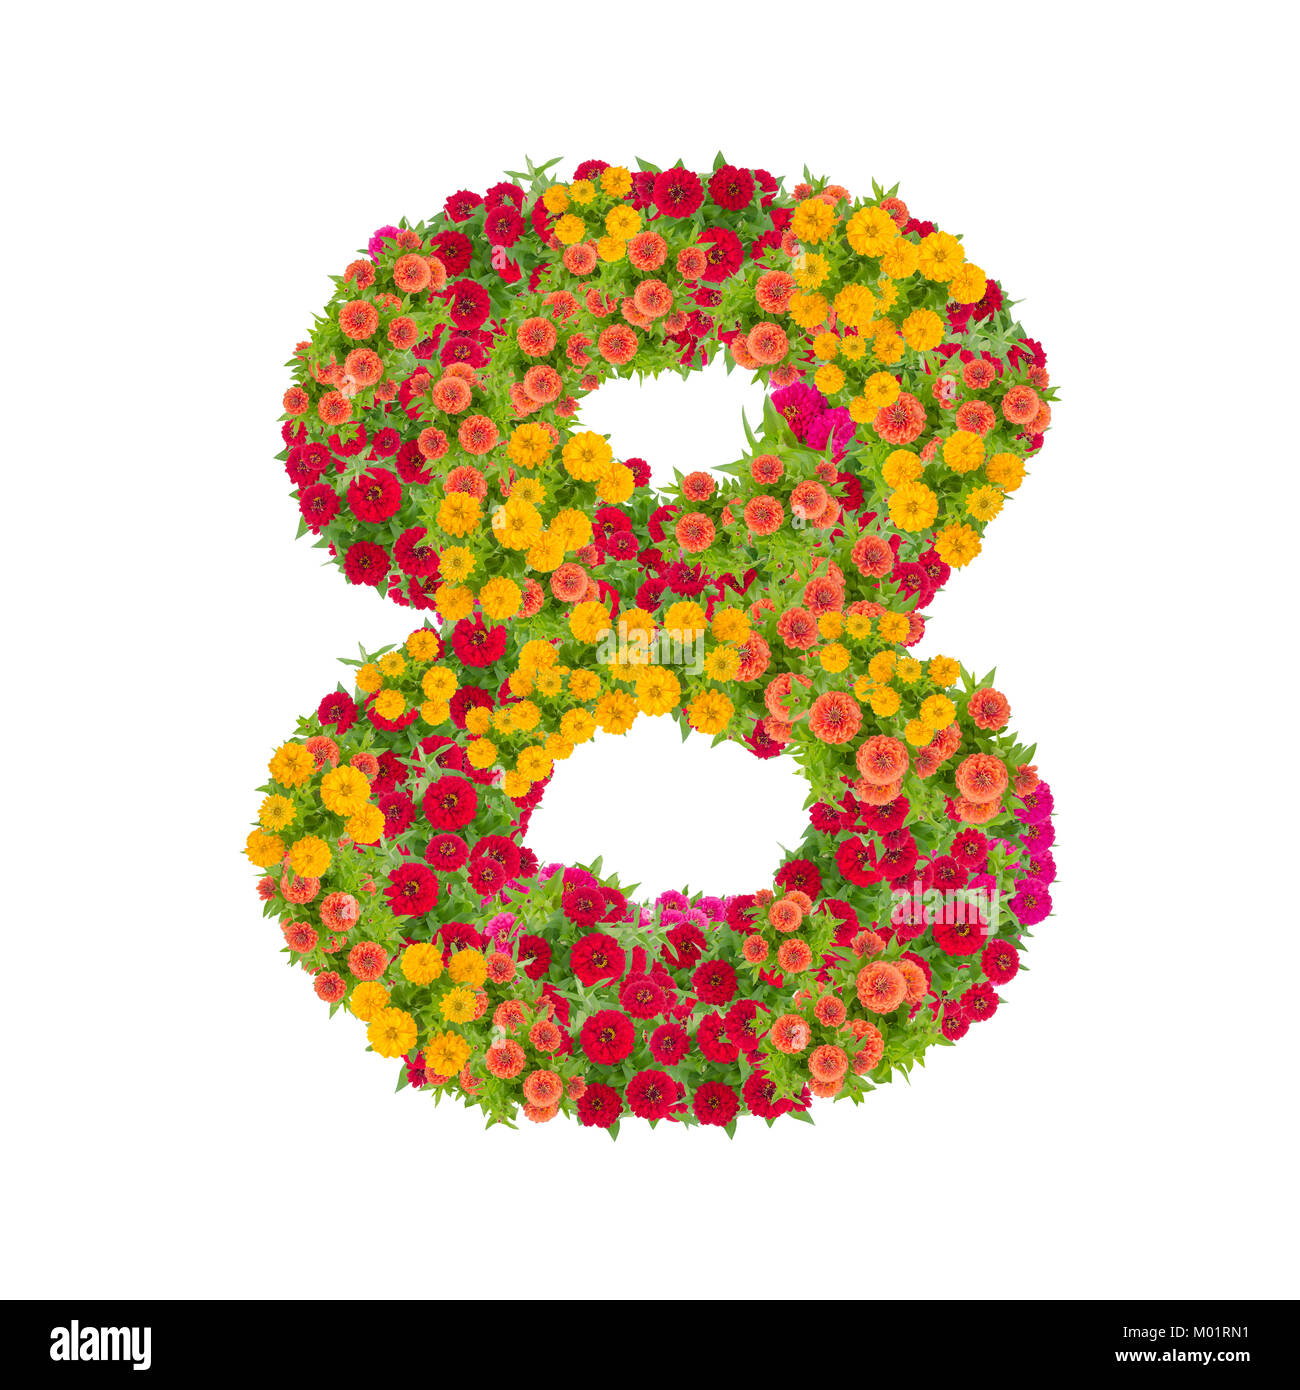 Die Nummer 8 von zinnien Blumen auf weißem Hintergrund gemacht. Farbenfrohe zinnia Blume in Nummer acht Form mit Freistellungspfad Stockfoto